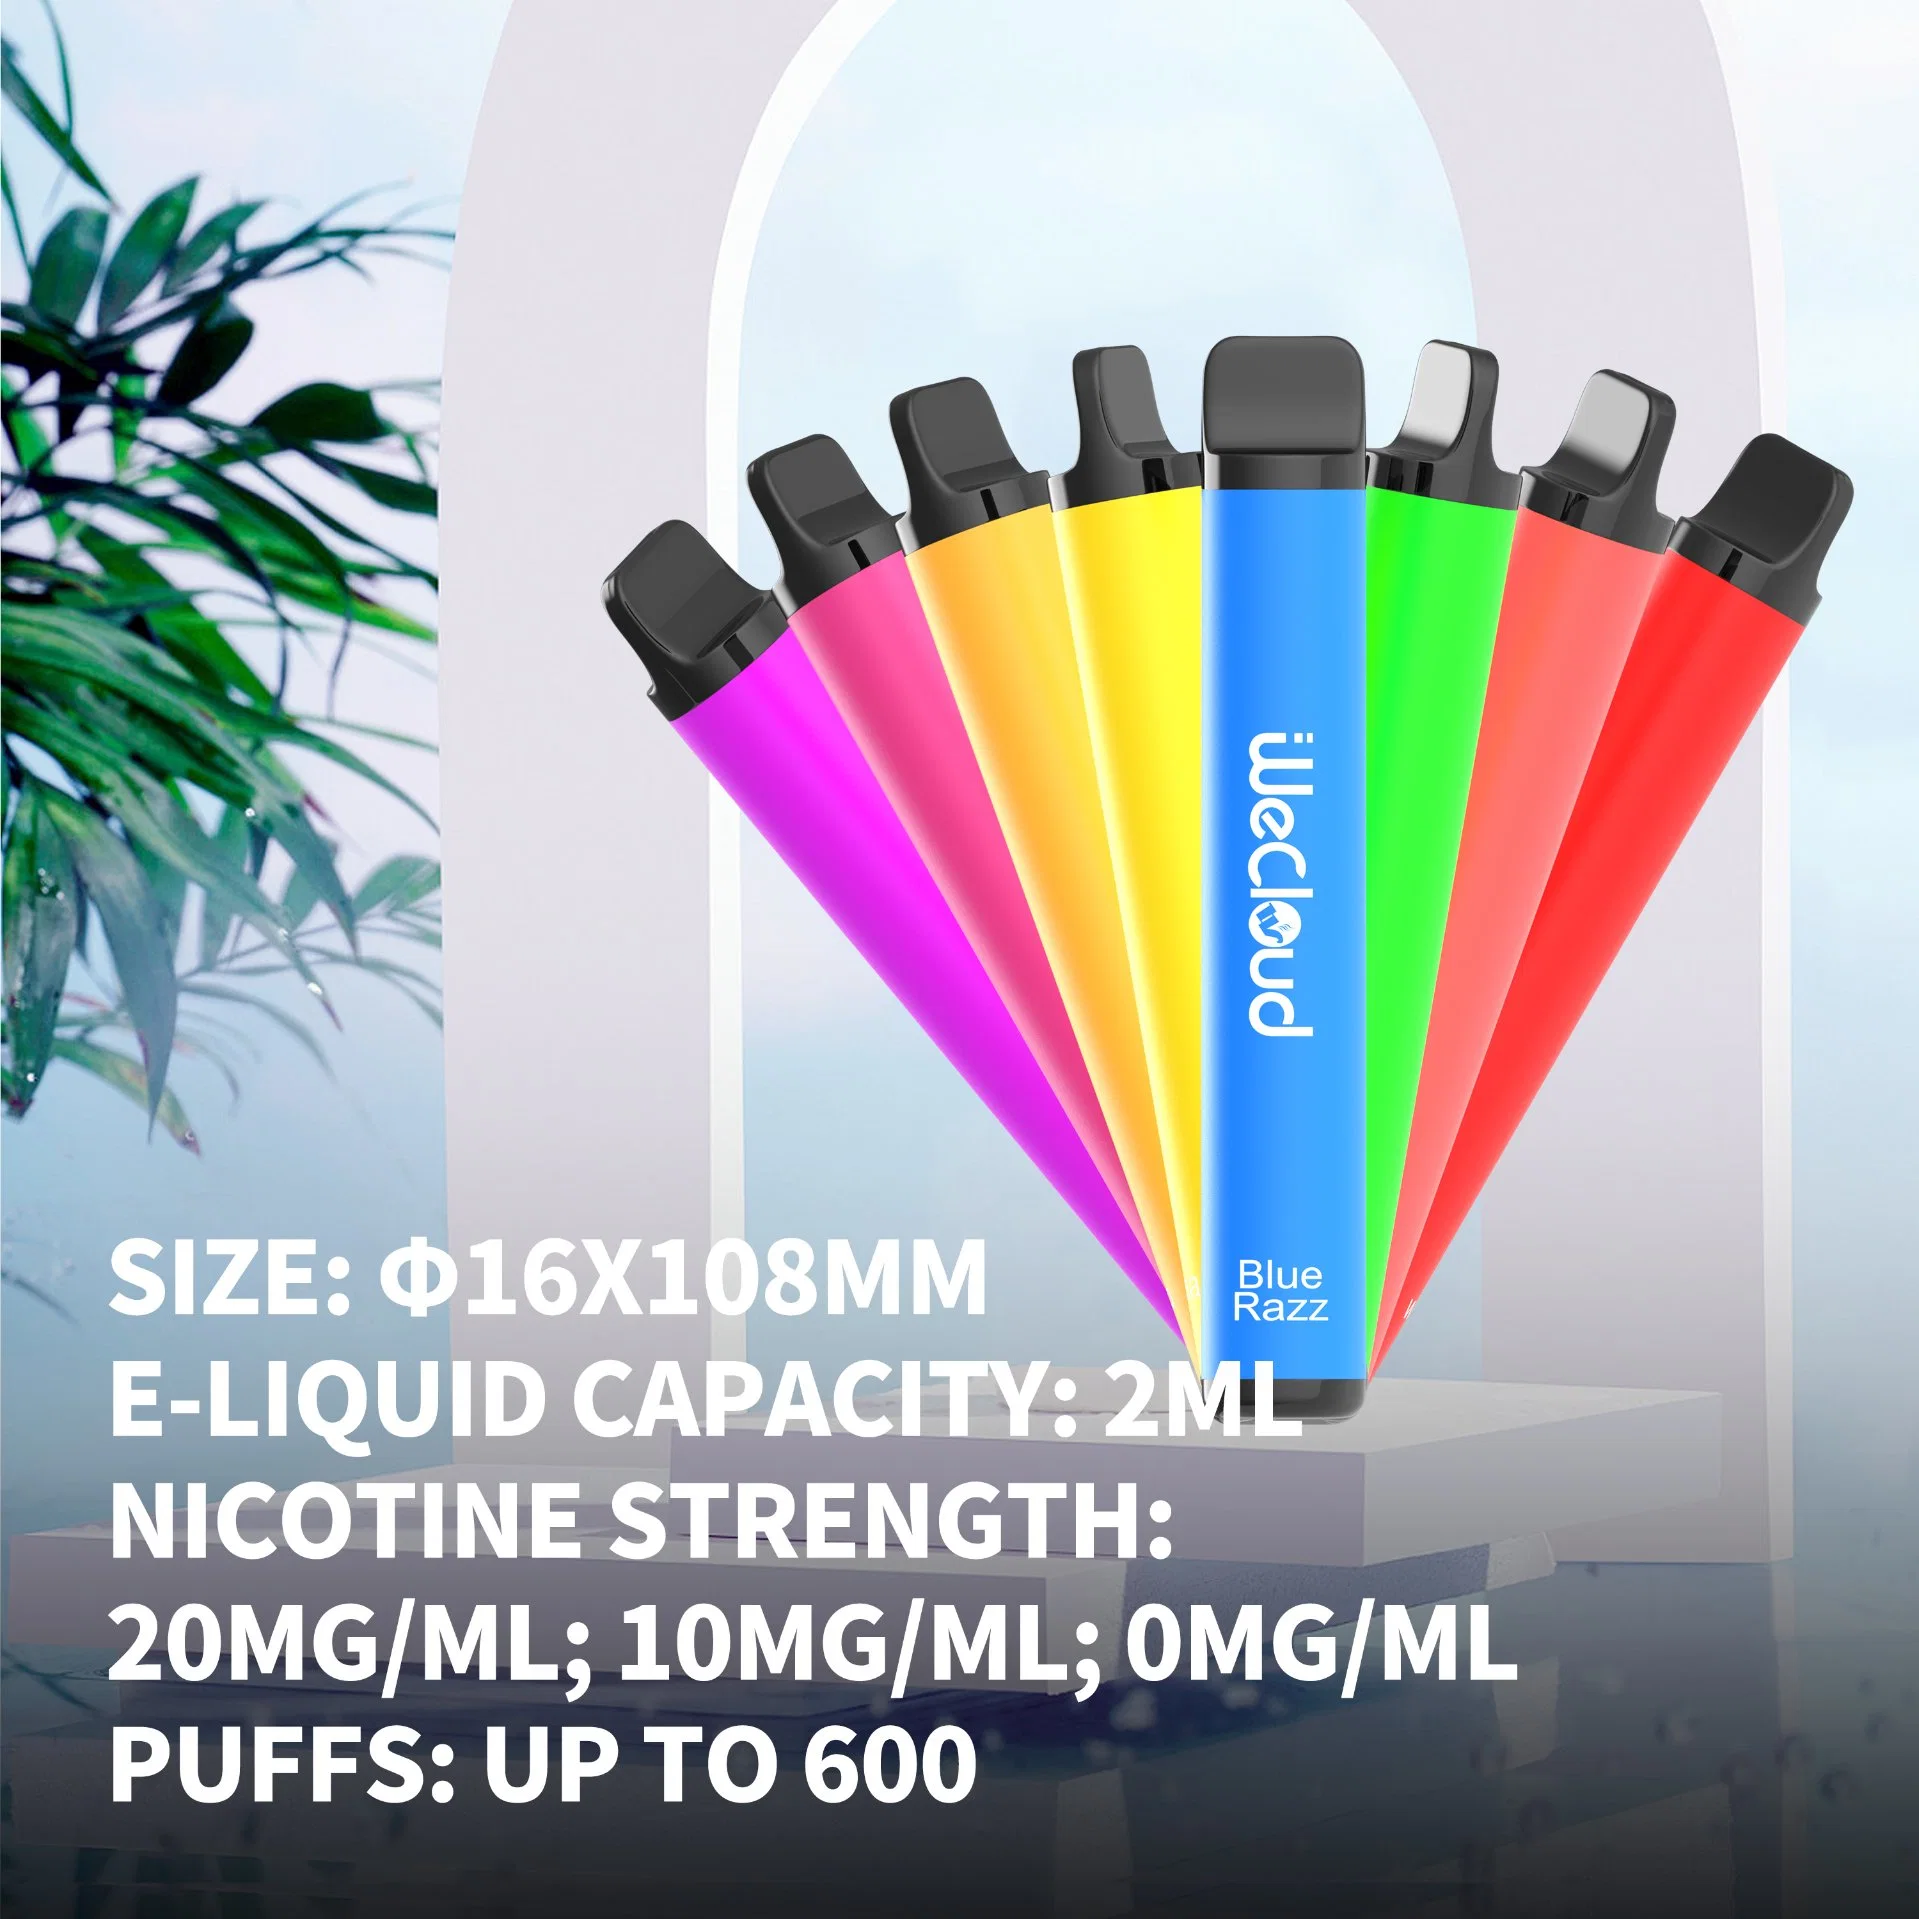 Wecloud Vape le plus récent E-cigarette fournisseur Vecee vaporiseur Vente en gros jetable VAPE Pen Pods 2ml liquide 600 Puffs E-cigarette pour européen Pays